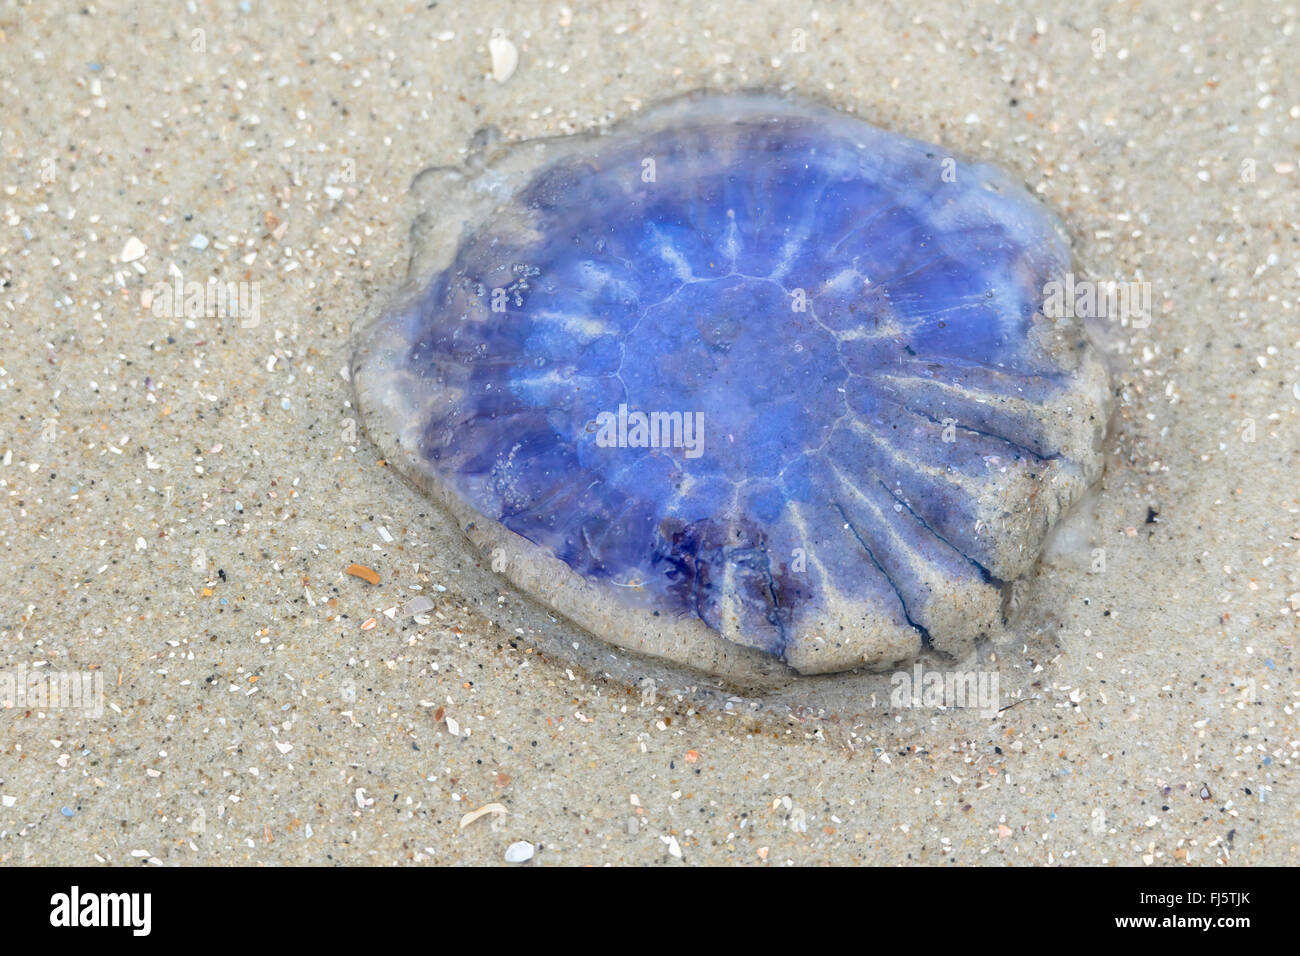 La crinière de lion Bleu bleuet, des méduses (Cyanea lamarcki, Cyanea lamarckii), sur la plage, l'ALLEMAGNE, Basse-Saxe, Frise Orientale, Juist Banque D'Images